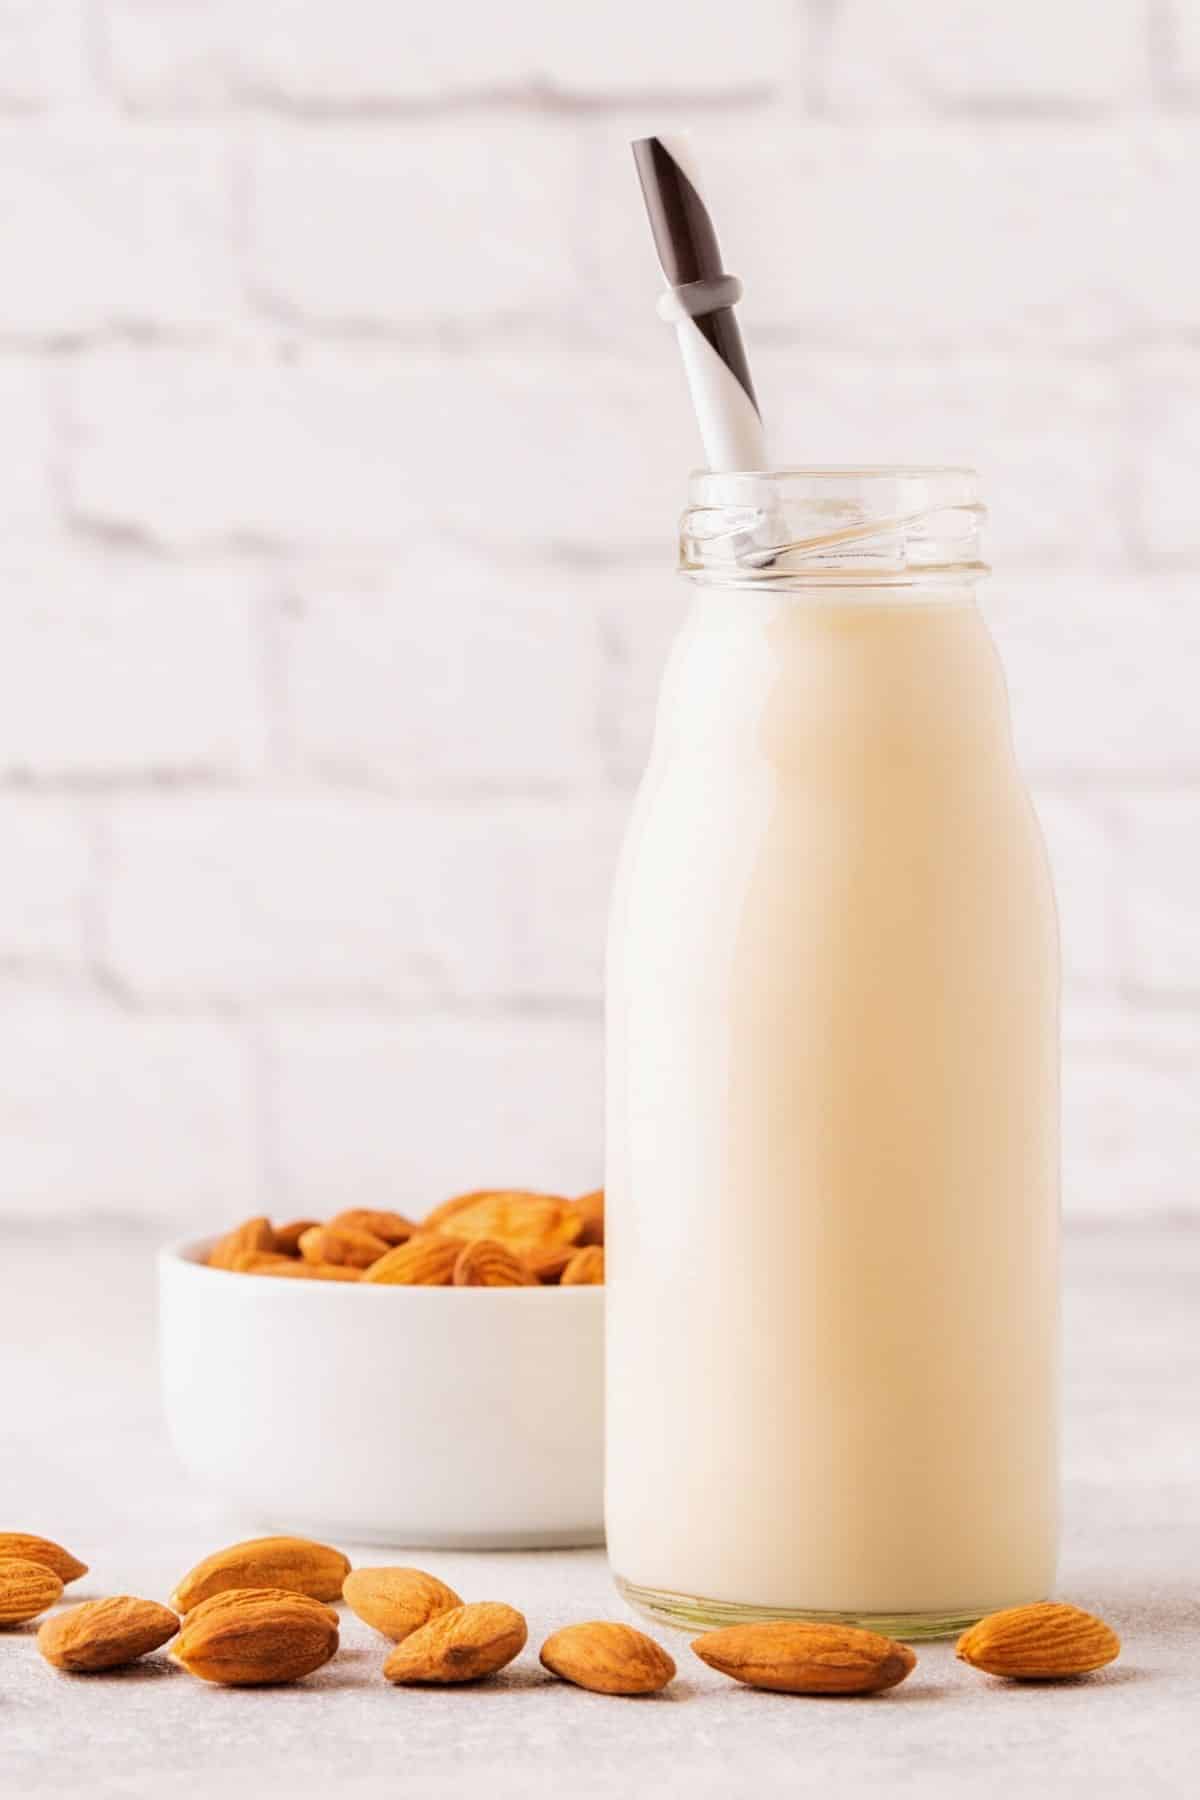 A tall glass jar of almond milk.